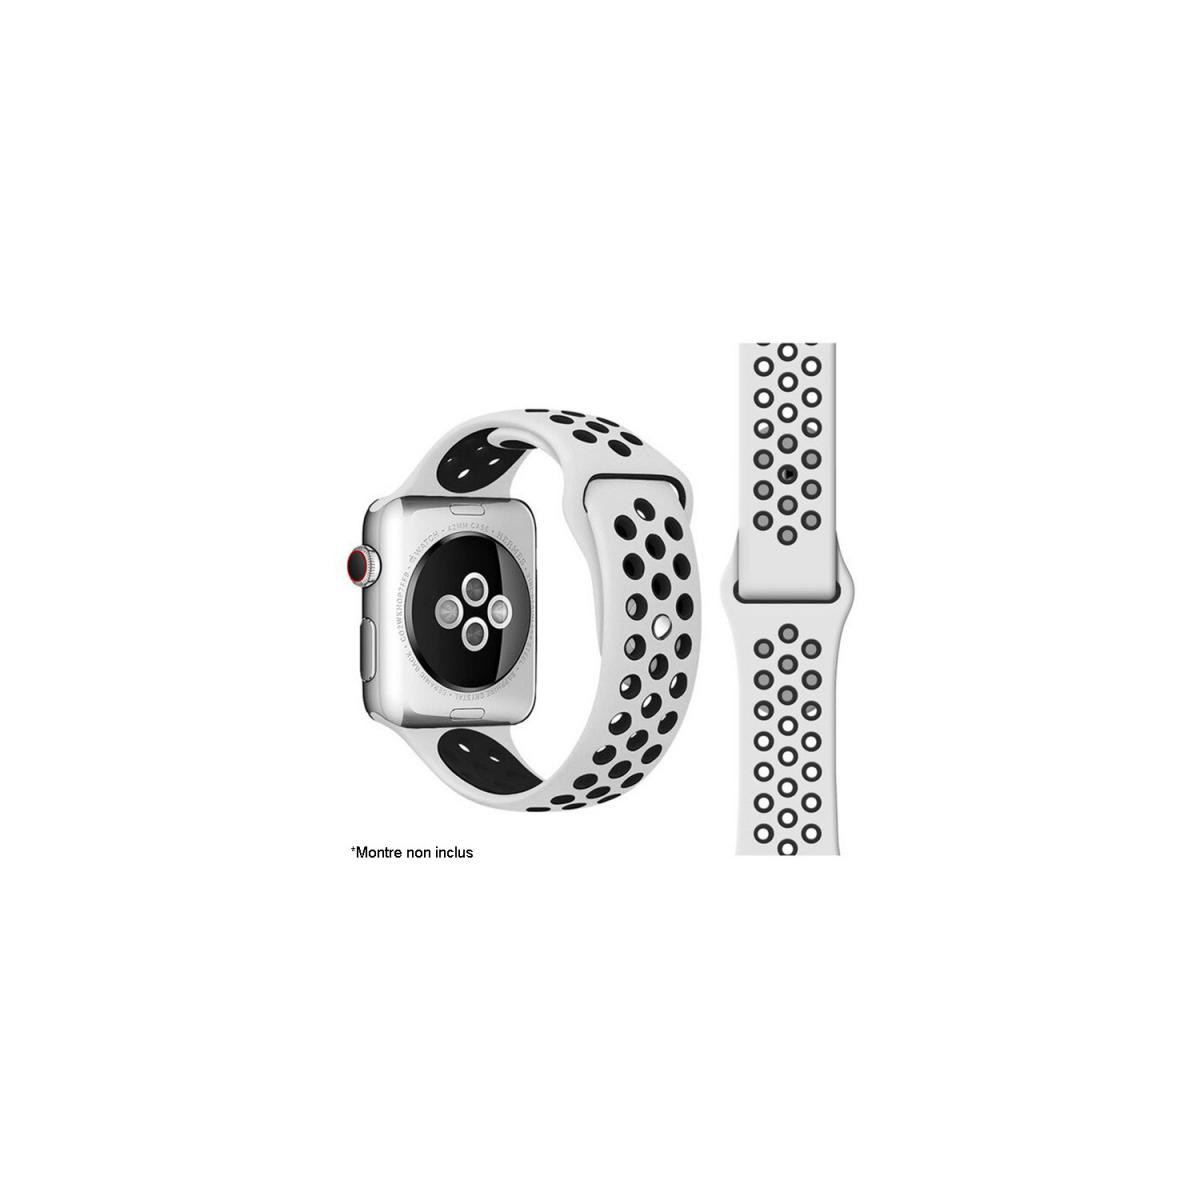 Ibroz - Ibroz Bracelet Apple Watch Sport 40mm blanc et noir - Bracelet connecté